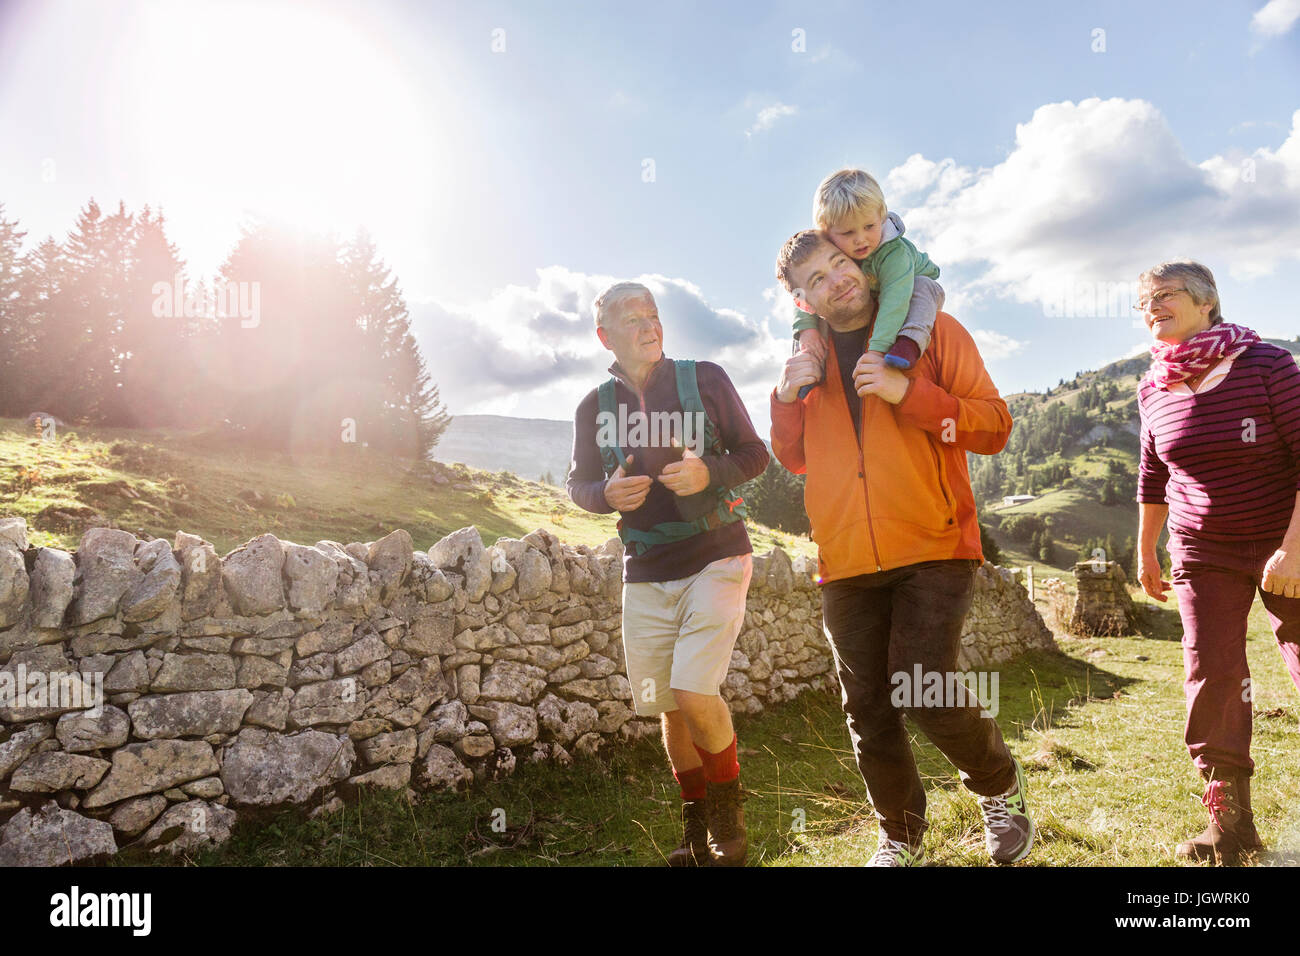 Three generation family, hiking, in rural setting, Geneva, Switzerland, Europe Stock Photo